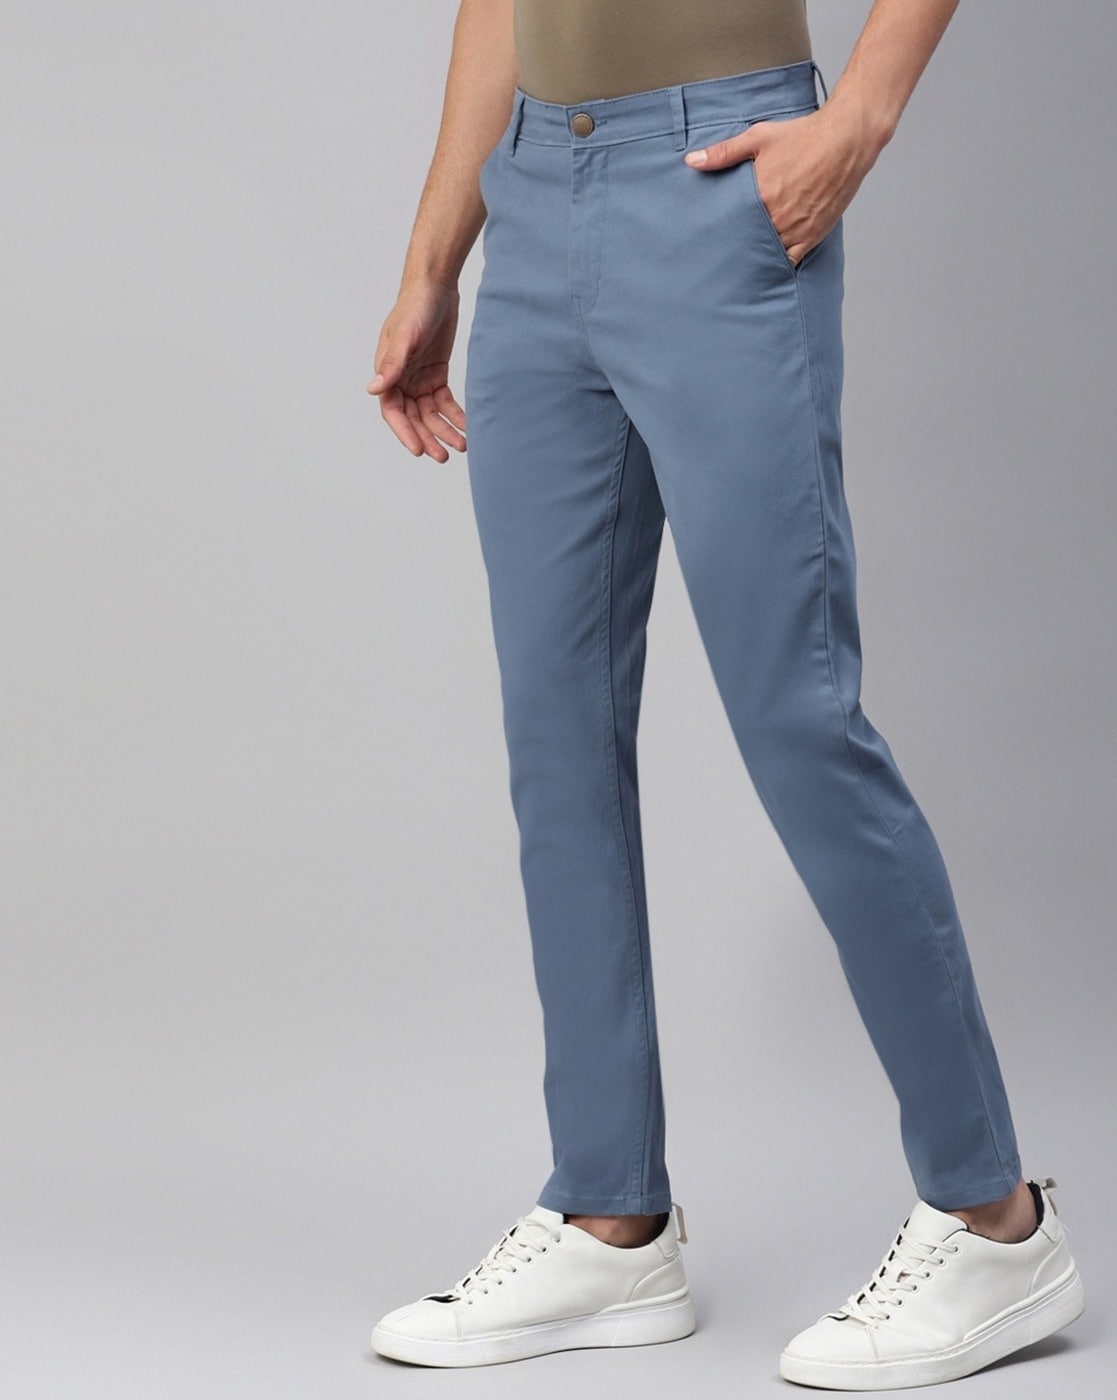 Fashlook Grey Trouser For Men